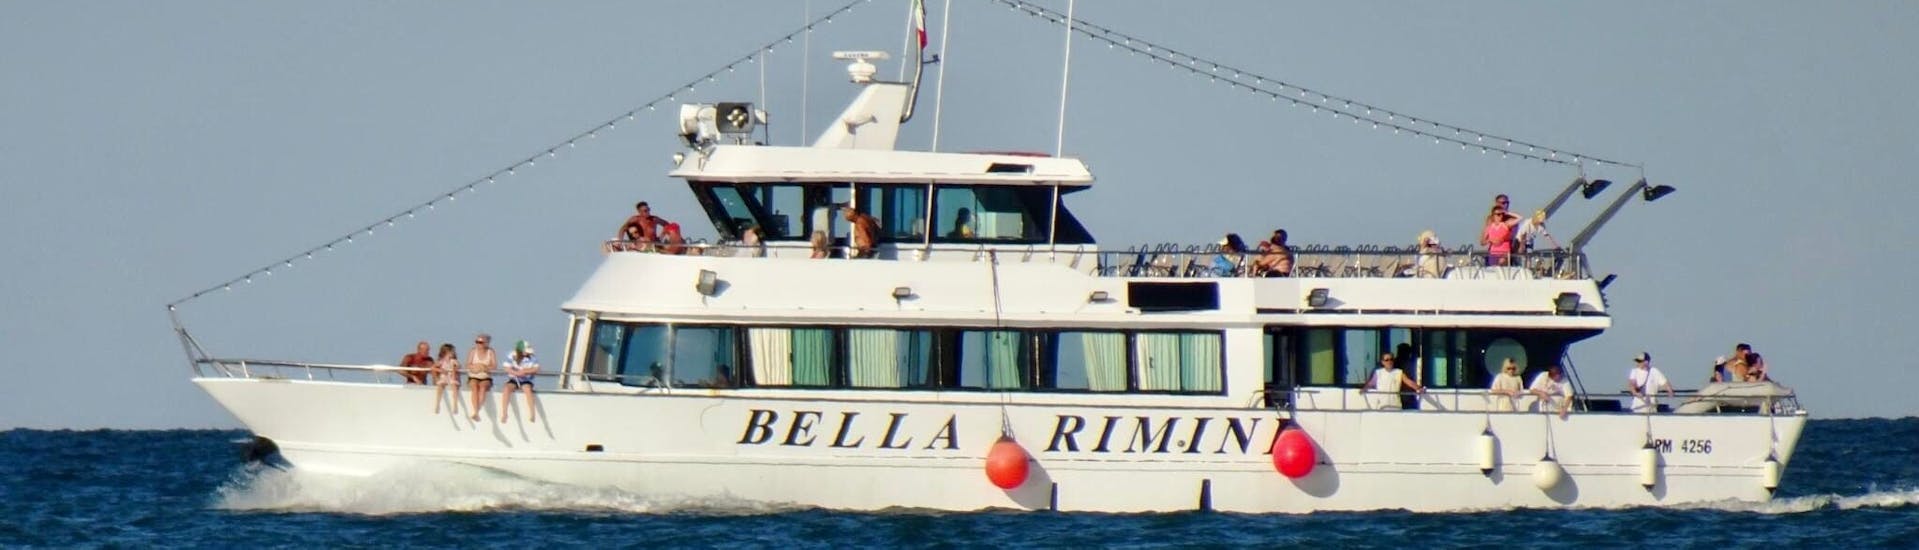 Das Boot Bella Rimini während der Bootstour zum Golf von Orosei & Grotta del Fico mit Schwimmstopps